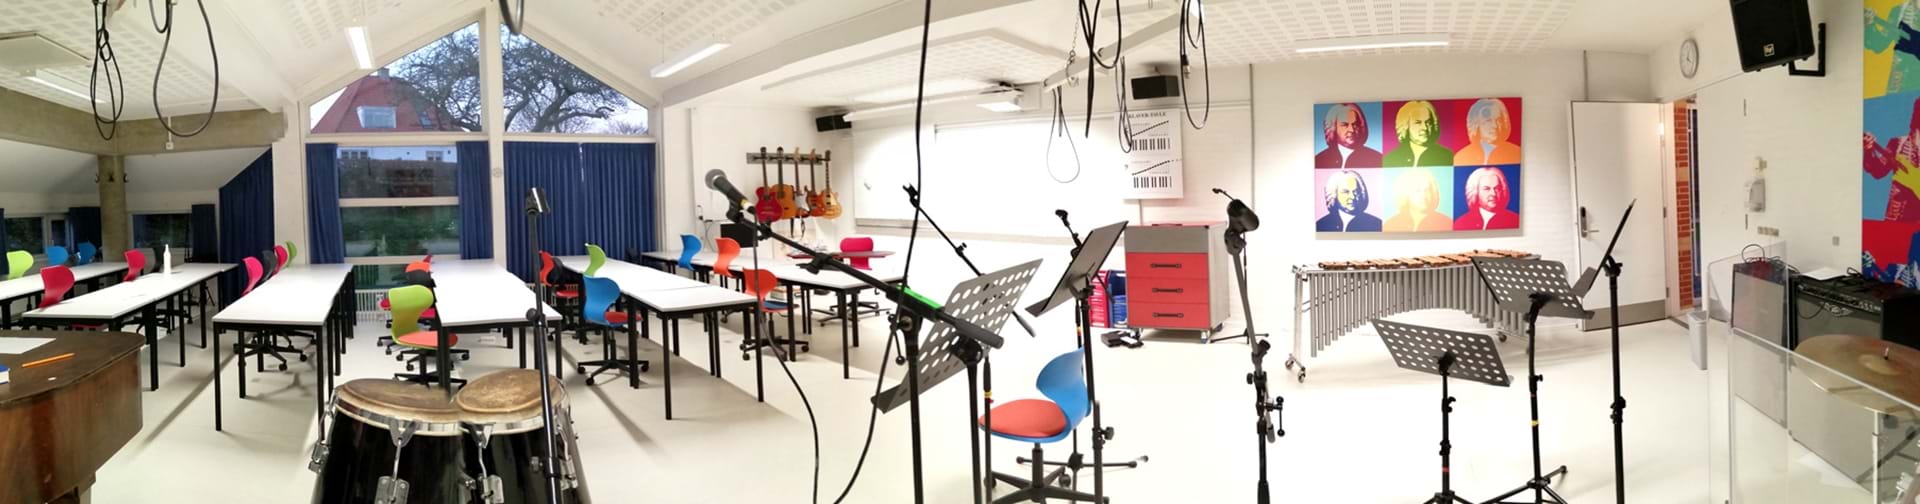 Det tomme musiklokale som er klar til elever